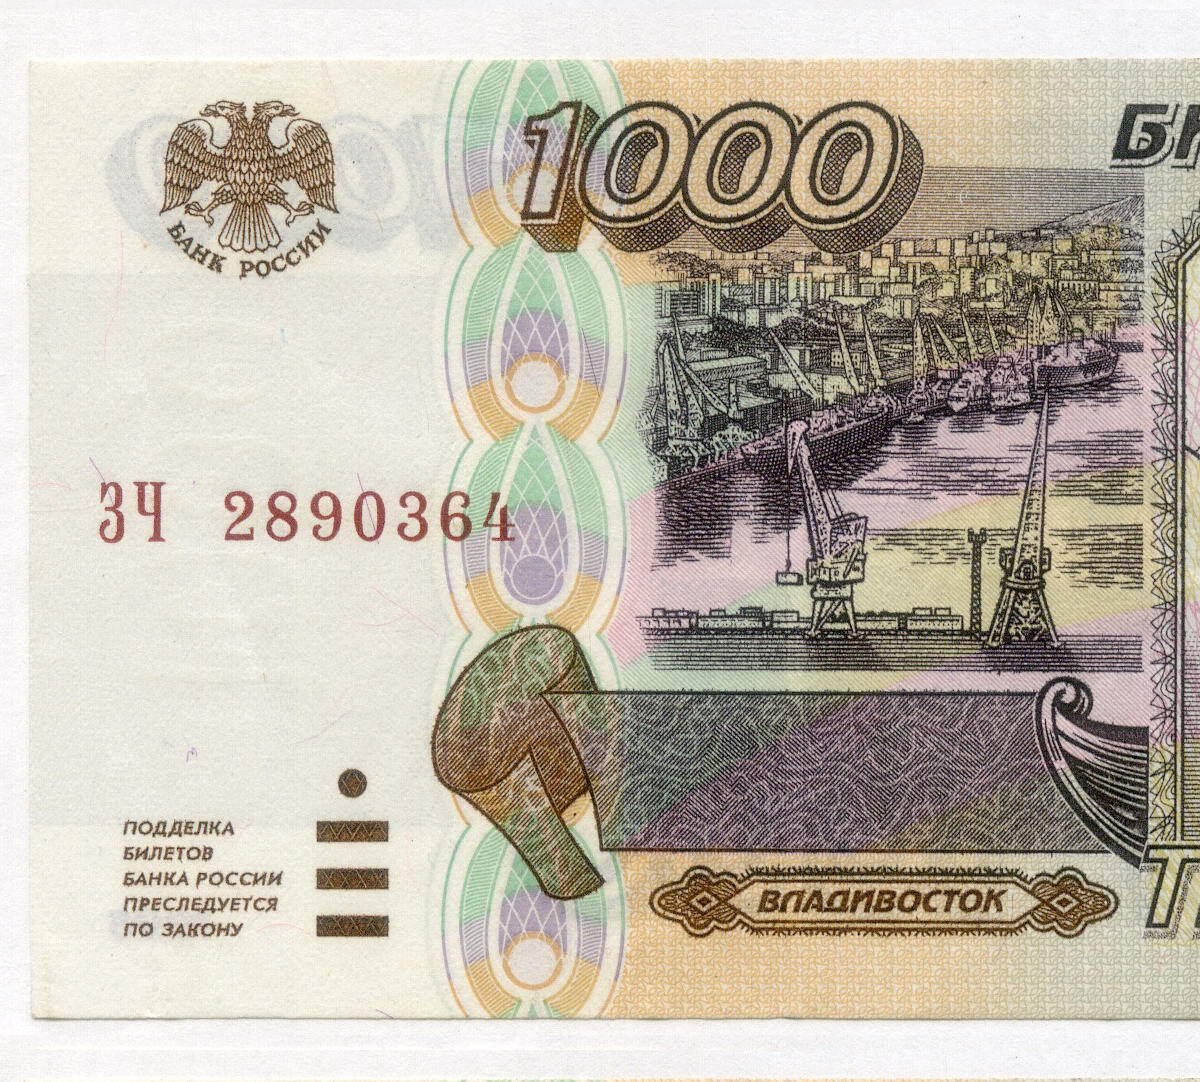 Купюра 1000р. 1000 Рублей 1995 года. Банкнота 1000 рублей 1995 года. Тысяча рублей 1995 года. Купюра 1000 рублей 1995 года.